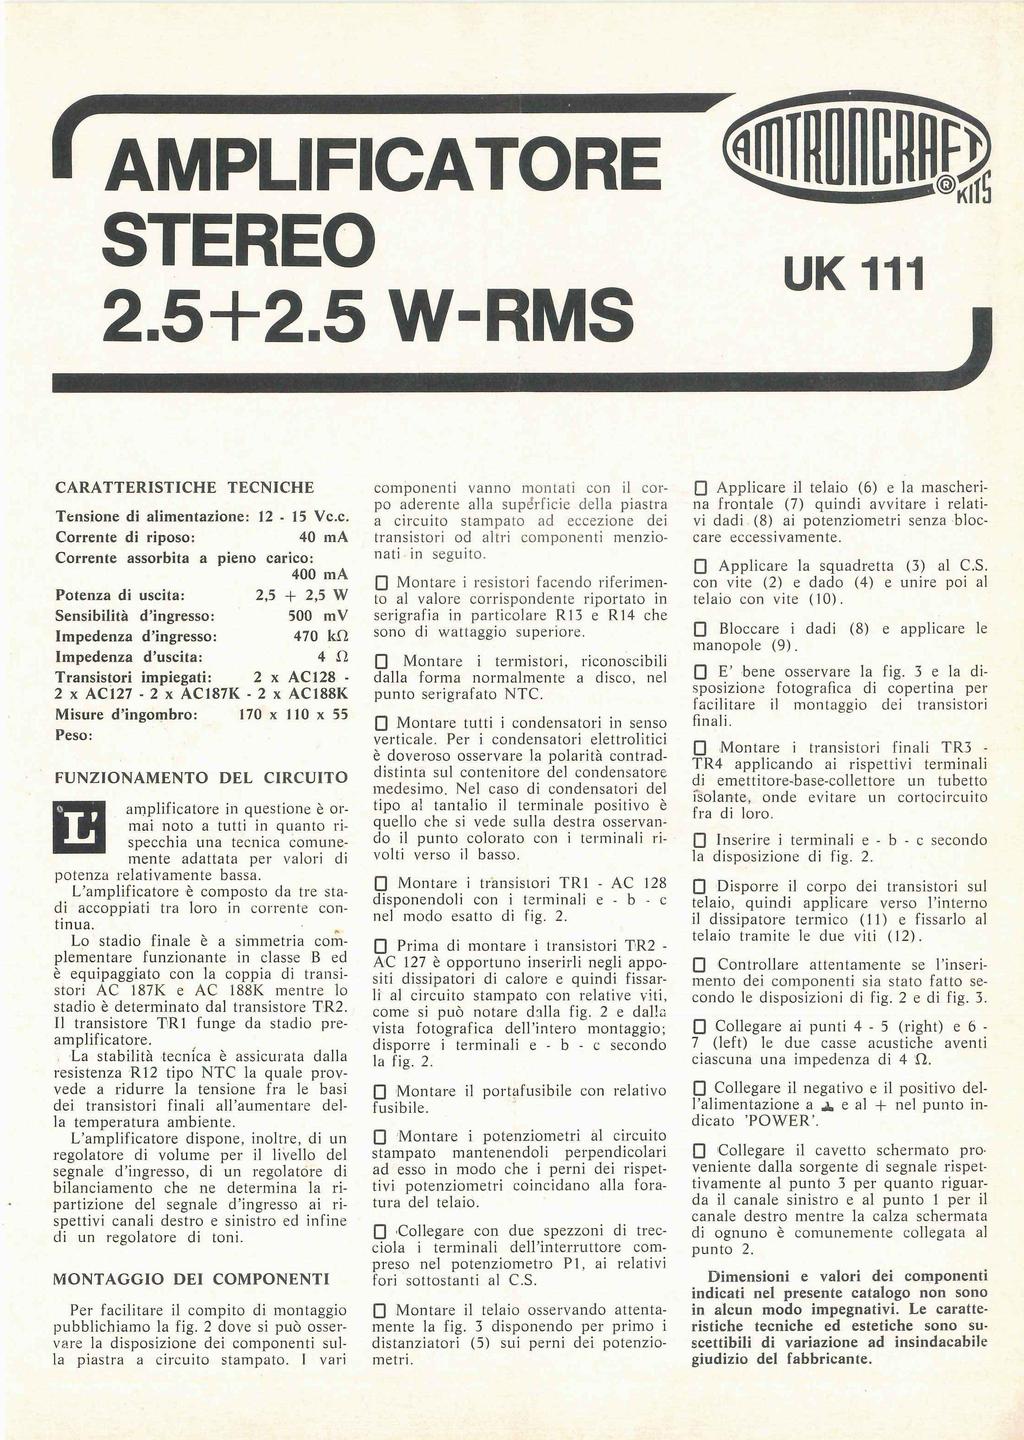 AMPLIFICATORE STEREO 2.5+2.5 W-RMS UK111 CARATTERISTICHE TECNICHE Tensione di alimentazione: 12-15 Vc.